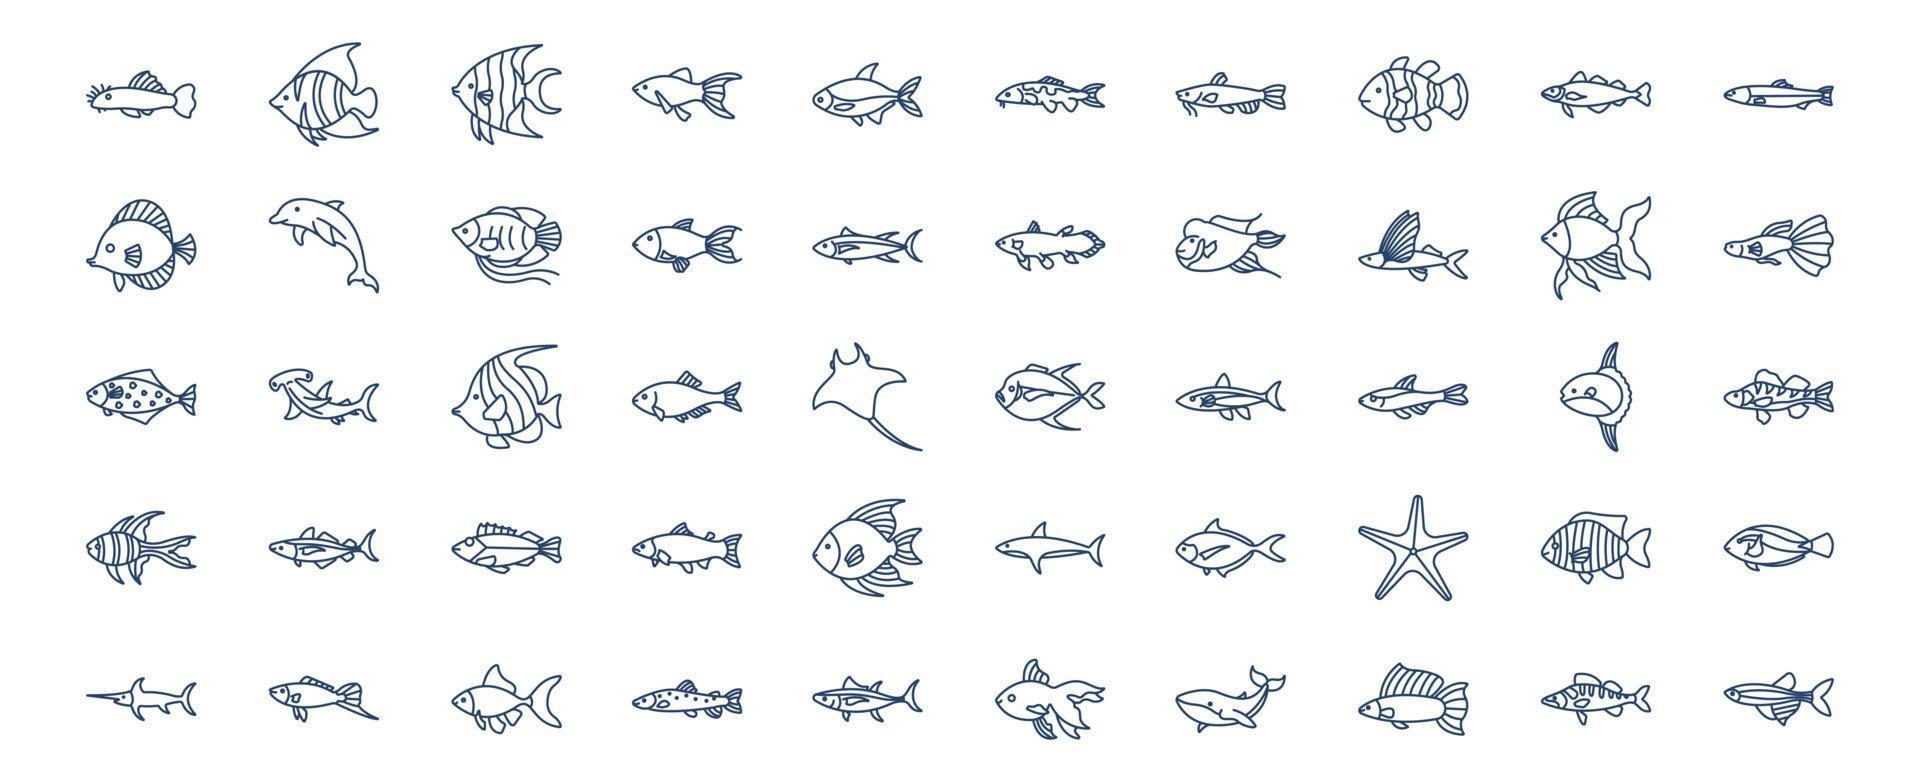 coleção de ícones relacionados a peixes, incluindo ícones como golfinho, peixe estrela, baleia, peixe tubarão e muito mais. ilustrações vetoriais, conjunto perfeito de pixels vetor